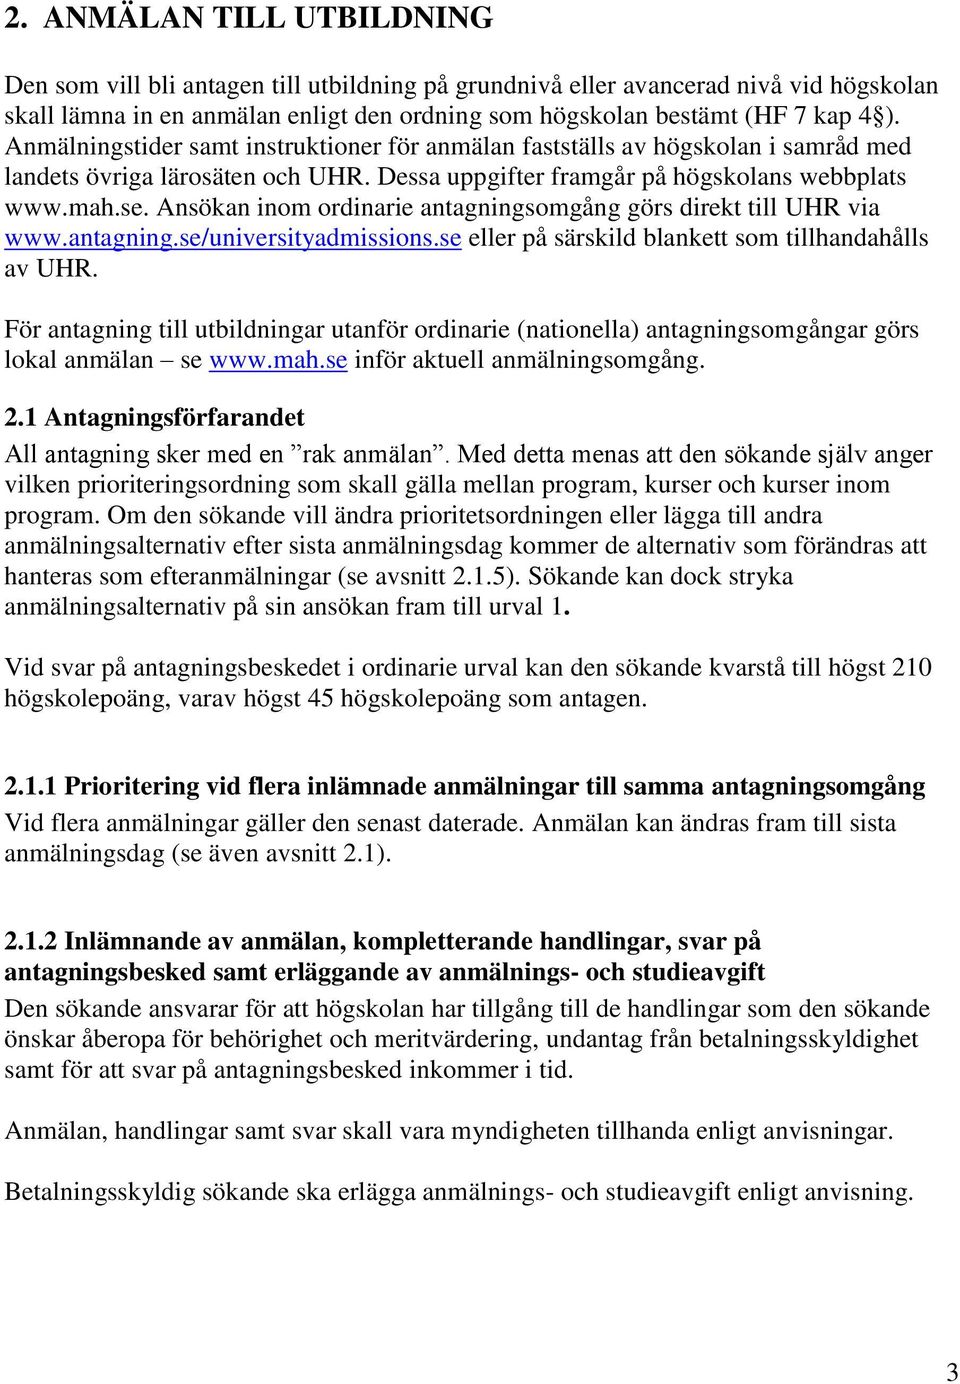 Ansökan inom ordinarie antagningsomgång görs direkt till UHR via www.antagning.se/universityadmissions.se eller på särskild blankett som tillhandahålls av UHR.